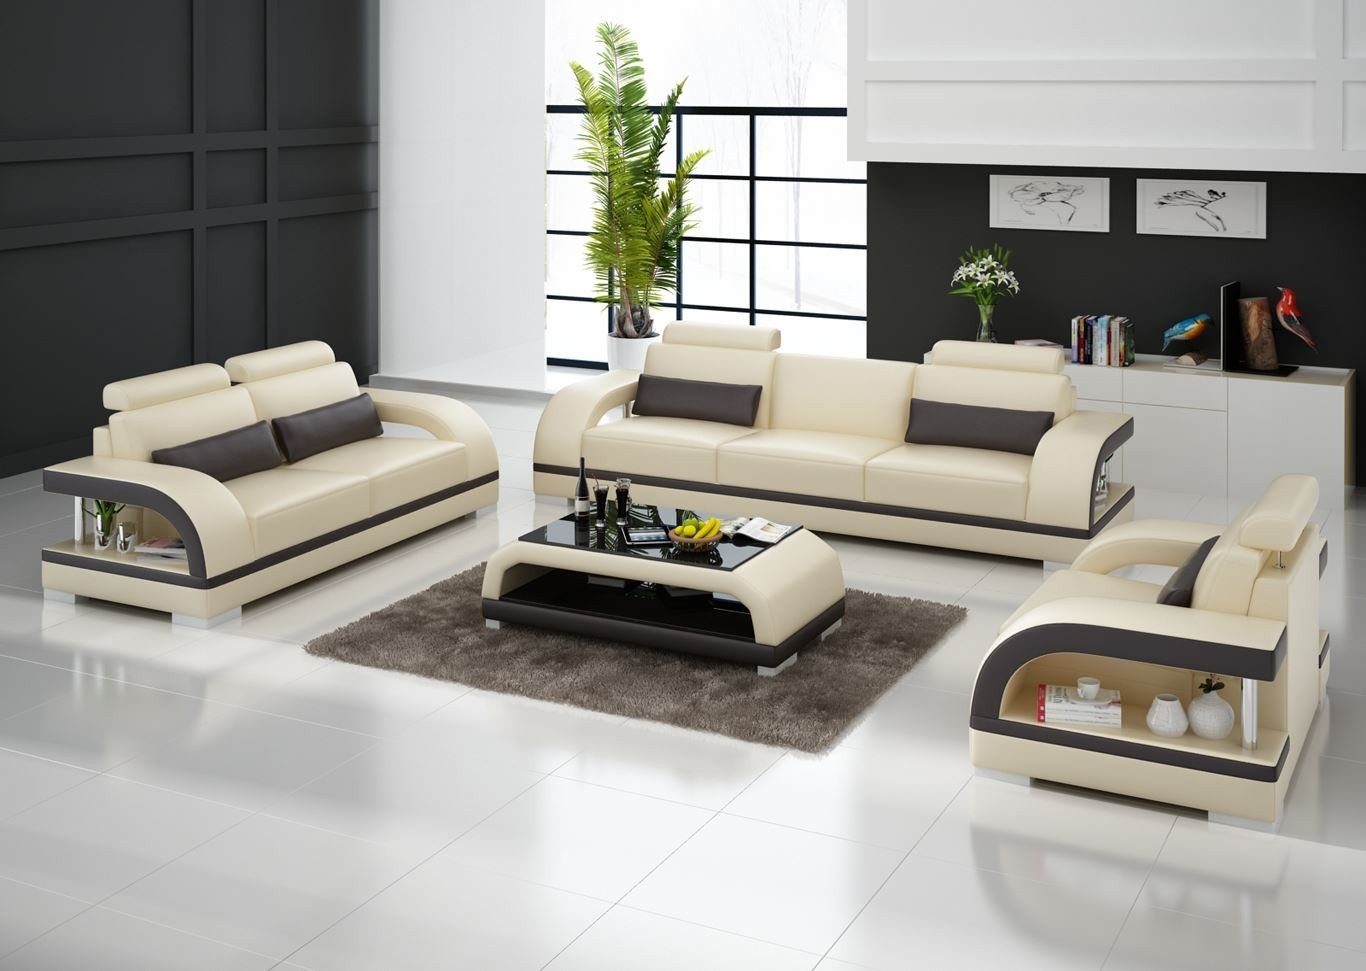 JVmoebel Sofa Moderne Weiße 3+2+1 Sogarnitur Luxus Polstermöbel Garnitur Neu, Made in Europe Beige